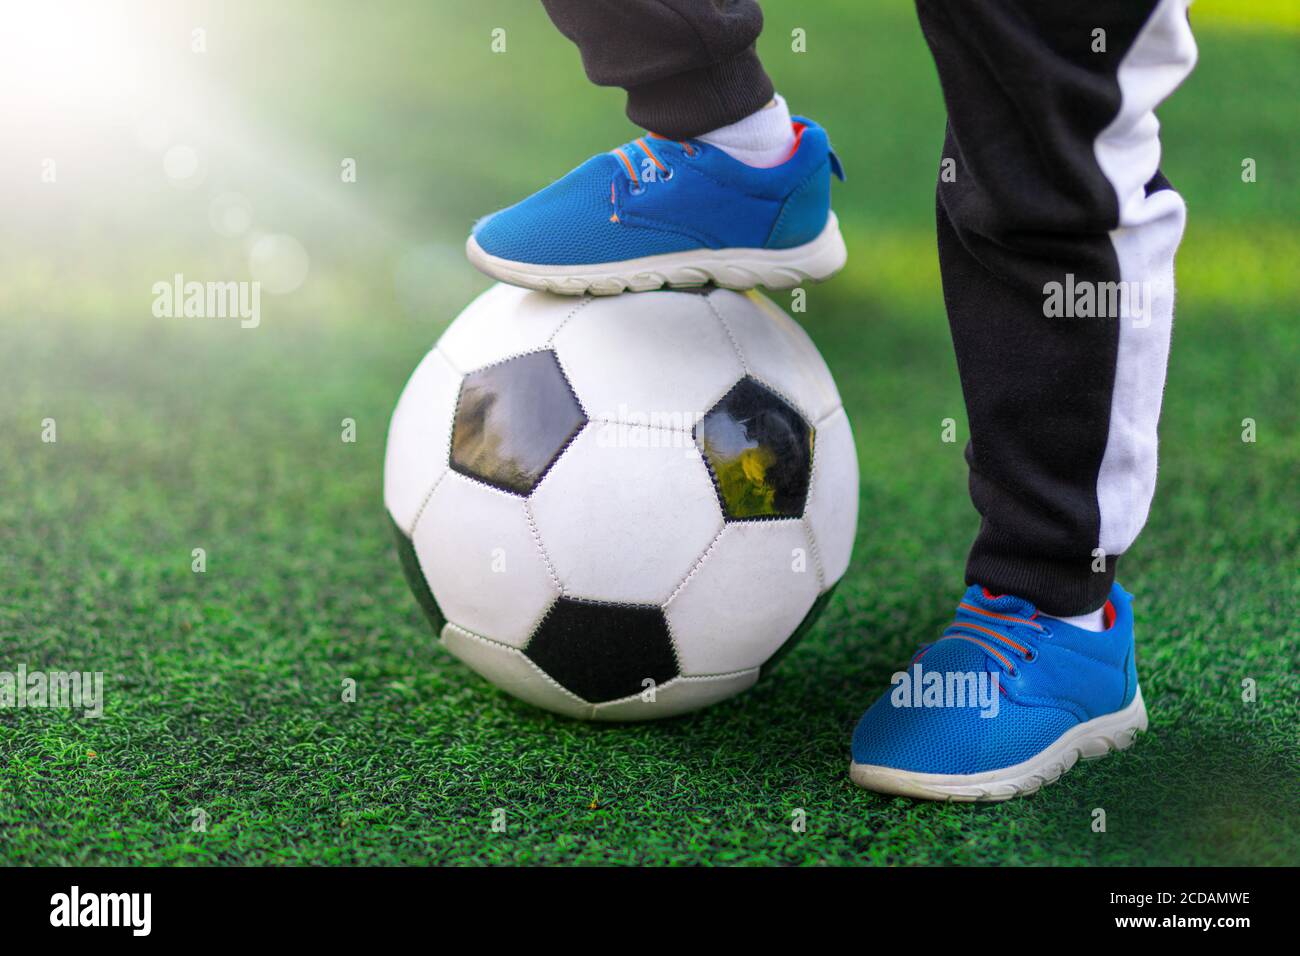 Le pied des enfants du vainqueur de la sneaker de chaussures de sport se  tient sur un ballon de football contre un fond d'herbe. Gros plan sur le  jeu et l'entraînement Photo